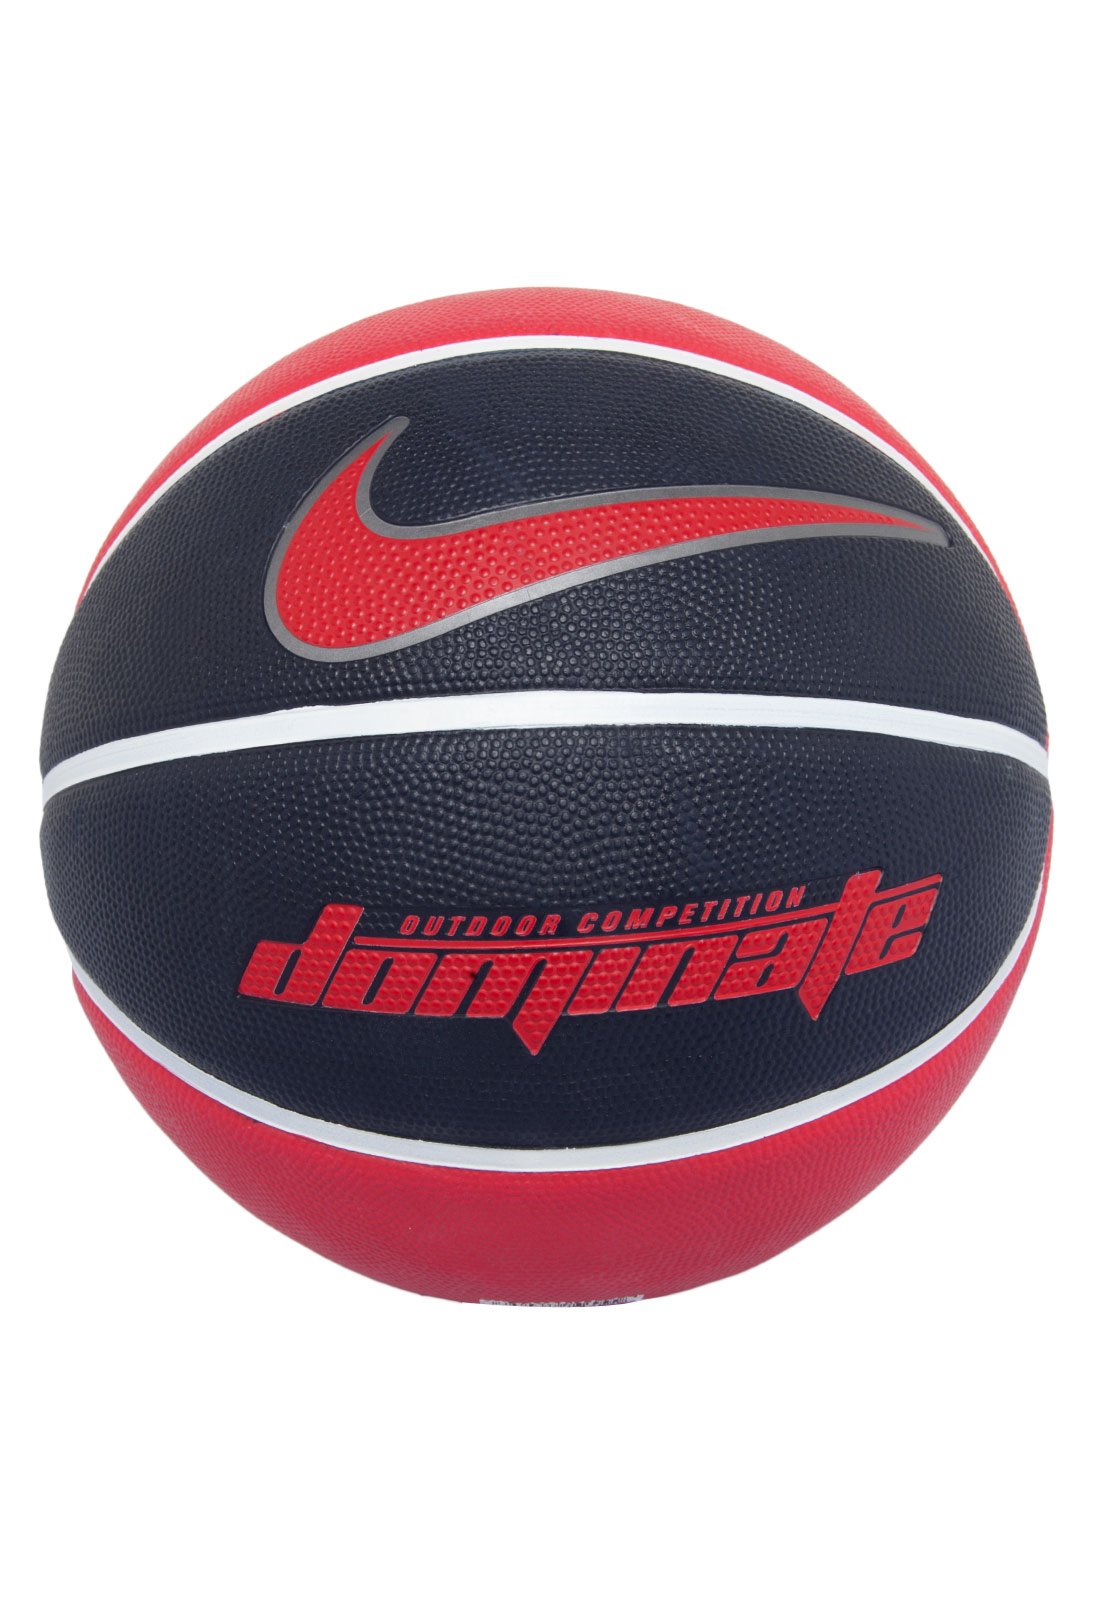 Bola de Basquete Nike Dominate 8P Tamanho 7 - Preta com Vermelha em  Promoção no Oferta Esperta